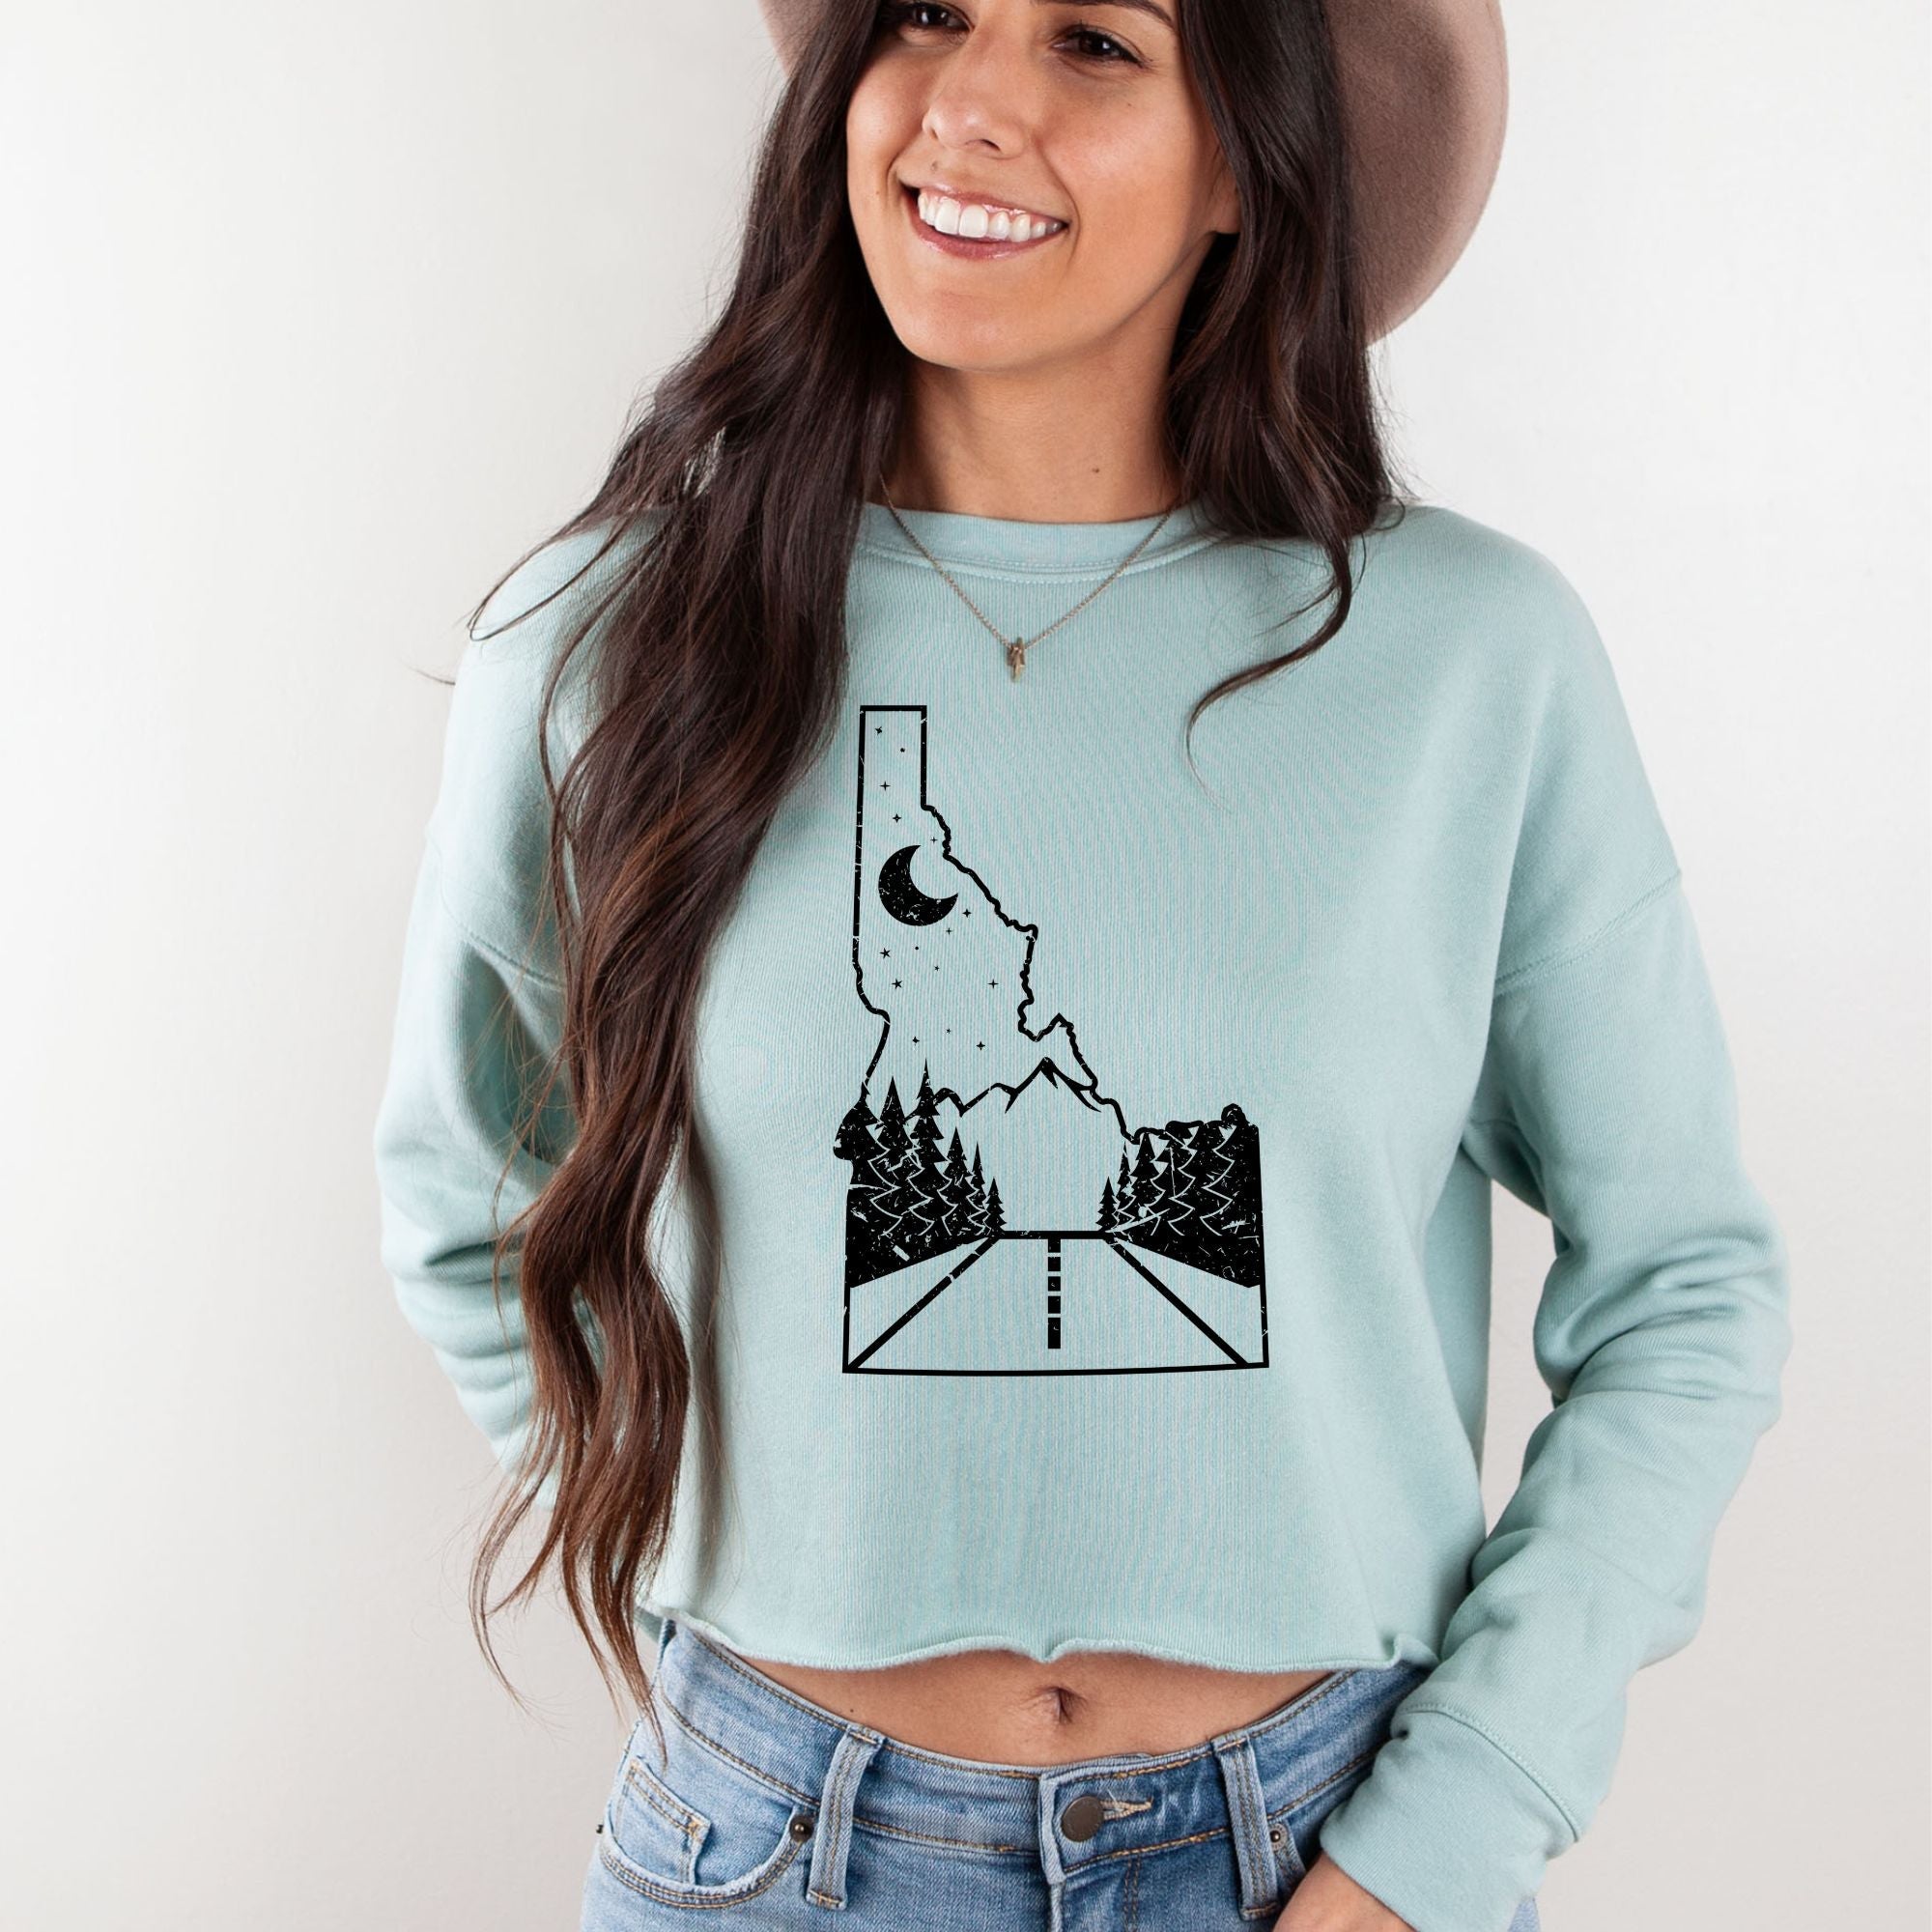 Idaho Highway Bella Canvas Cropped Sweatshirt or Crop Hoodie *Women's Crop Fit*-208 Tees Wholesale, Idaho